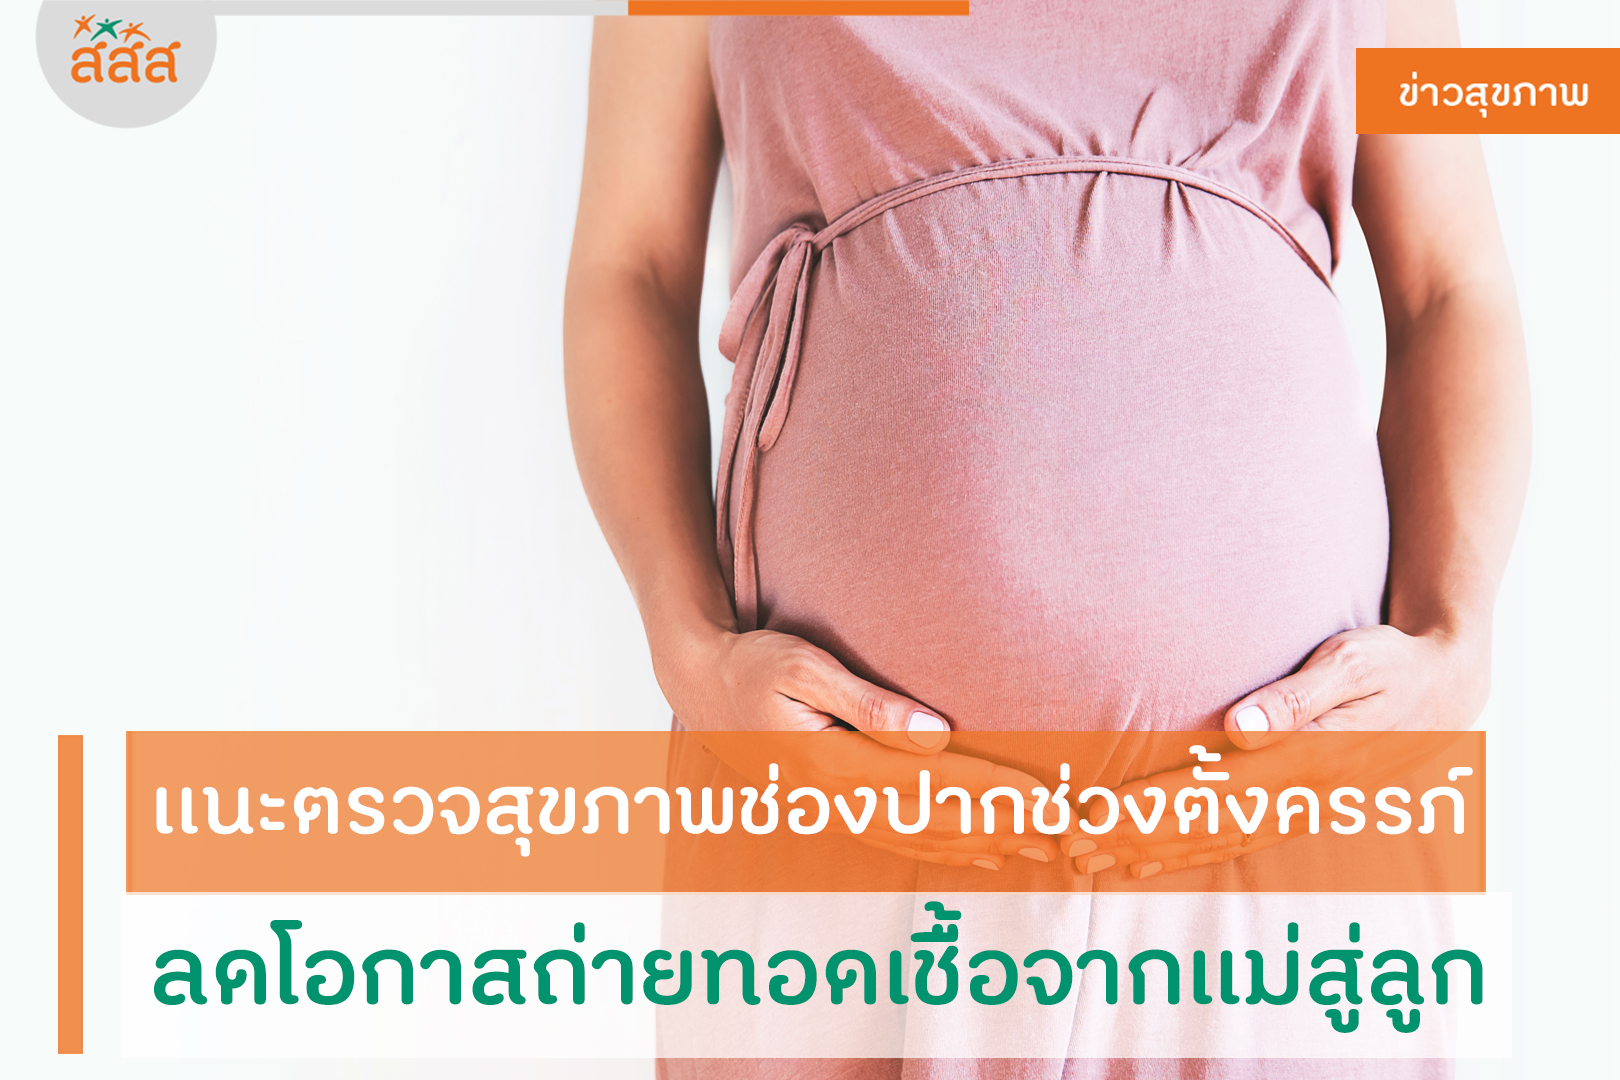 เเนะตรวจสุขภาพช่องปากช่วงตั้งครรภ์ ลดโอกาสถ่ายทอดเชื้อจากแม่สู่ลูก thaihealth